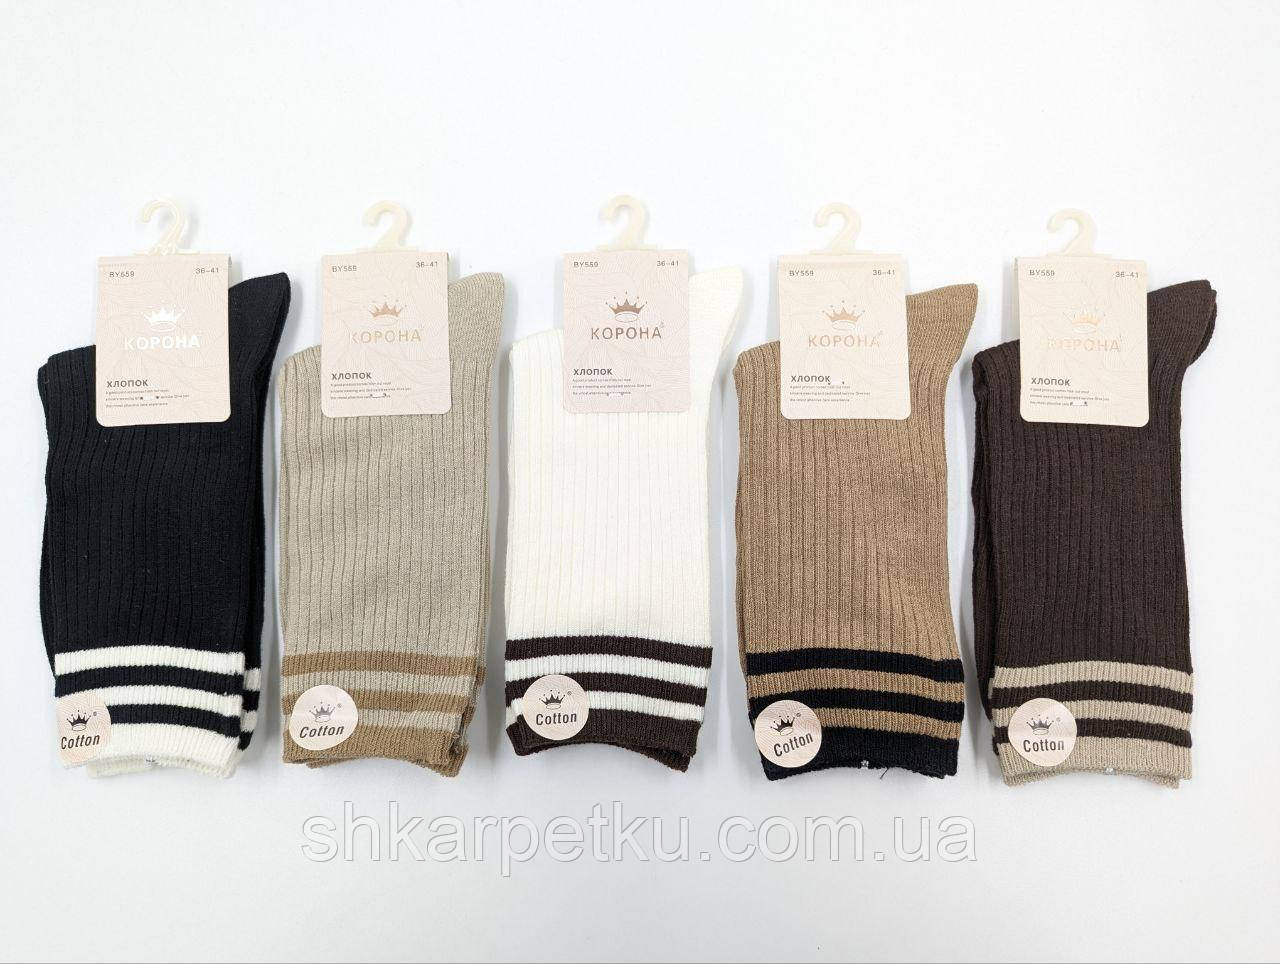 Жіночі демісезонні шкарпетки Корона, бавовна, однотонні смужки рубчик. Розмір 36-41, 10 пар/уп. асорті кольорів